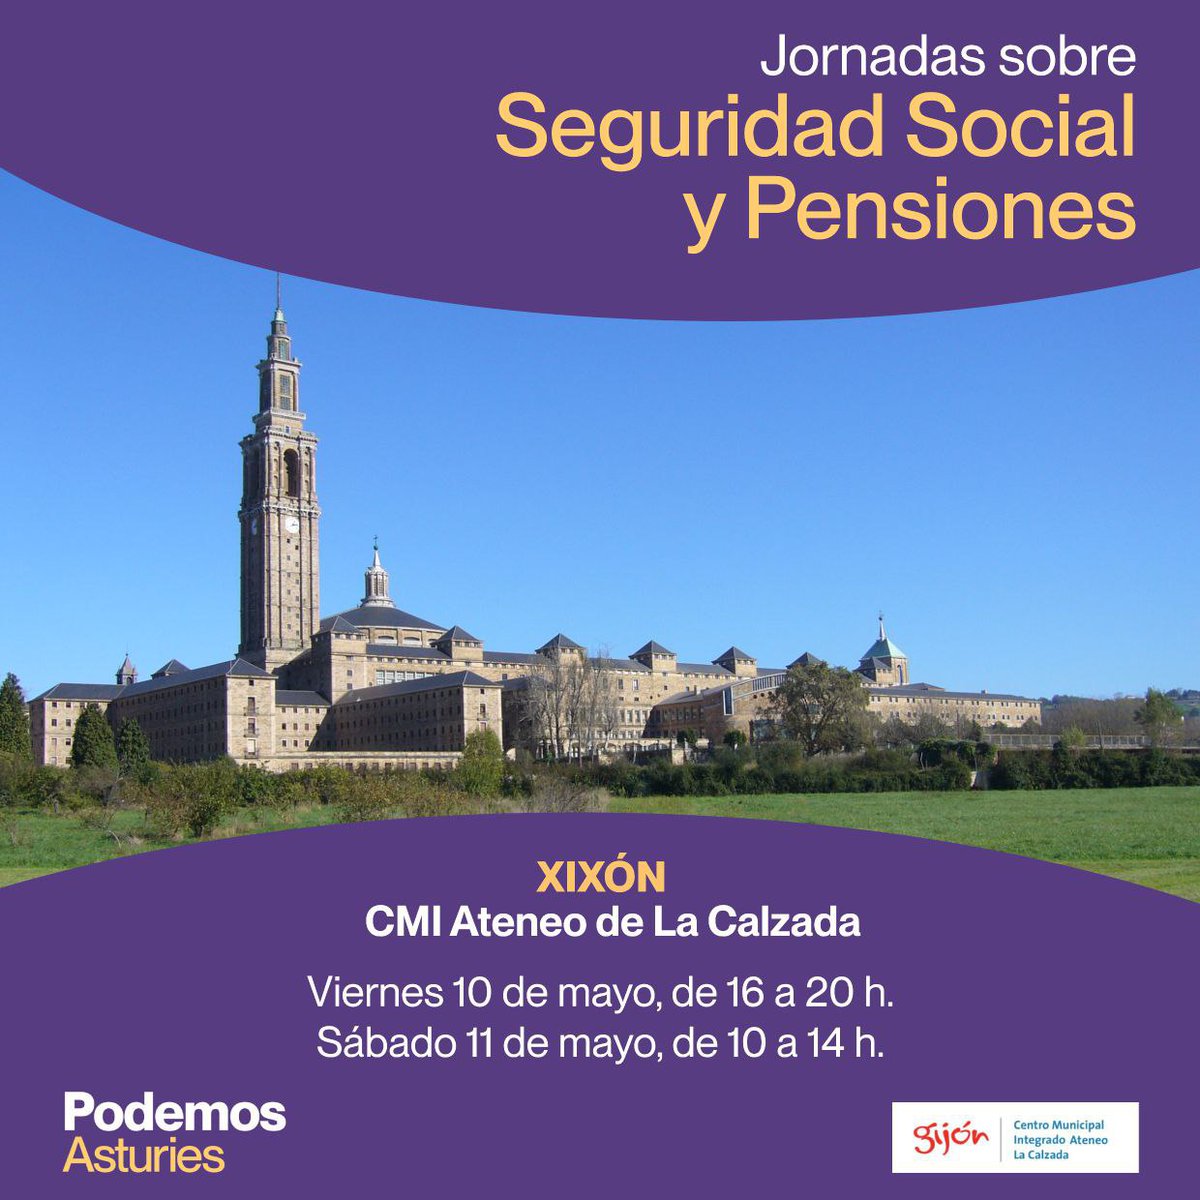 Iniciamos las Jornadas Sobre Seguridad Social y Pensiones organizada por @PodemosAsturies que se van a desarrollar esta tarde y mañana sábado, en el Ateneo  de La Calzada, en #Xixón.